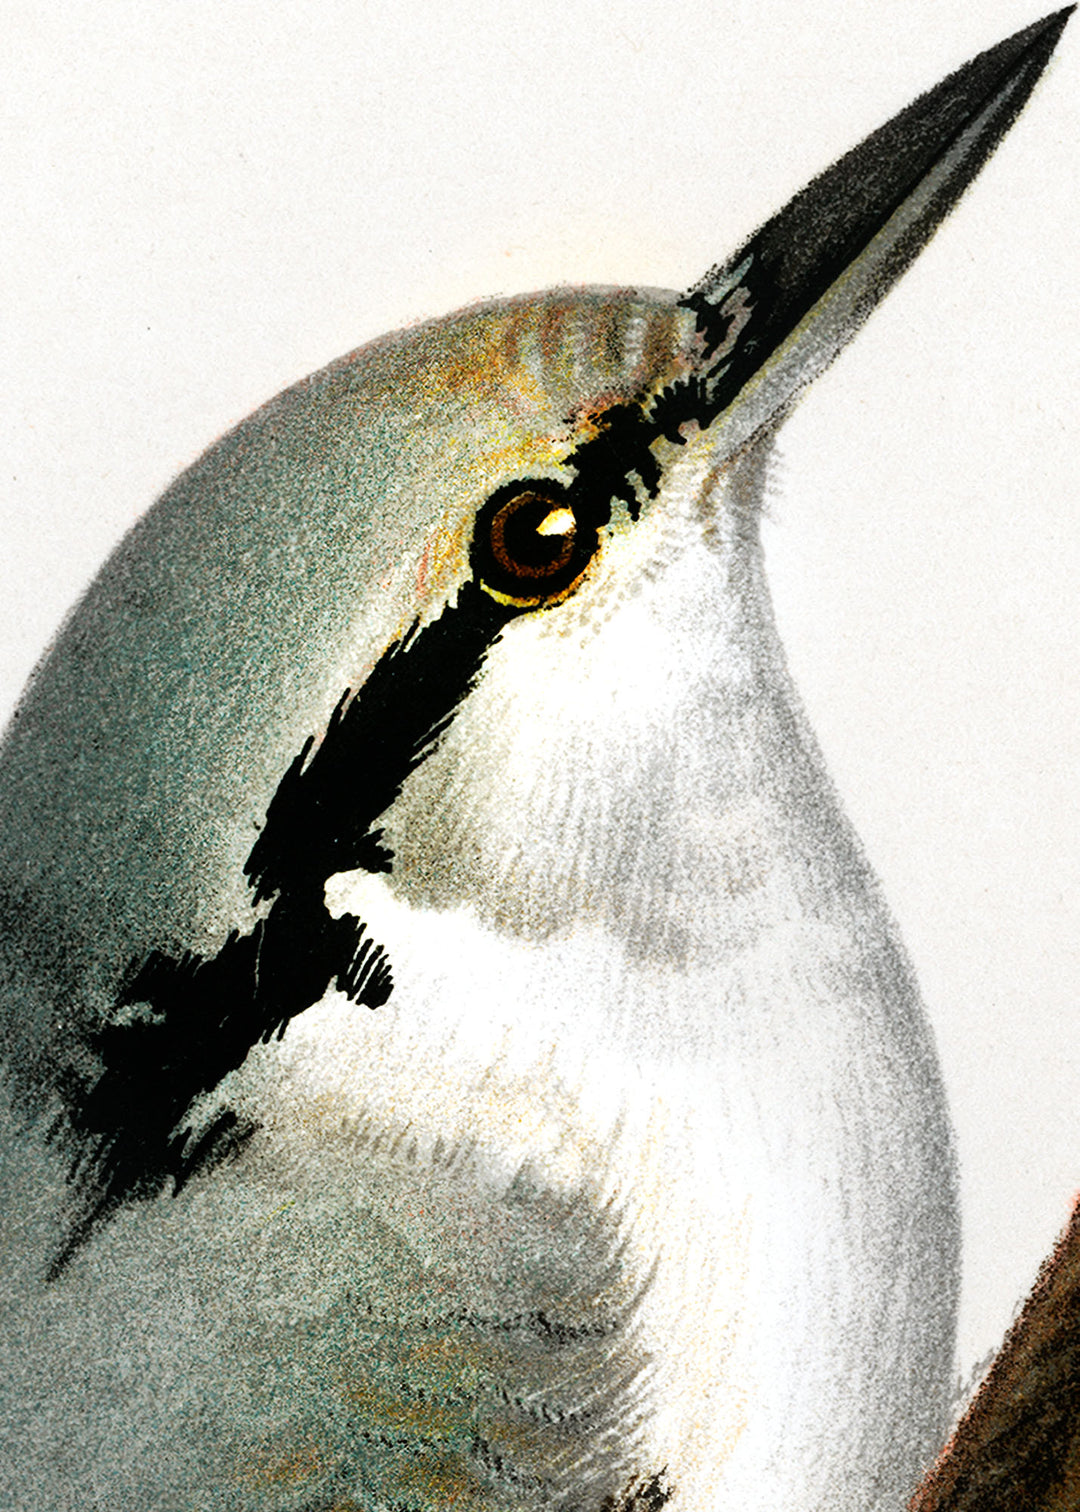 Fågeln Nötväcka på klassisk vintage poster/affisch